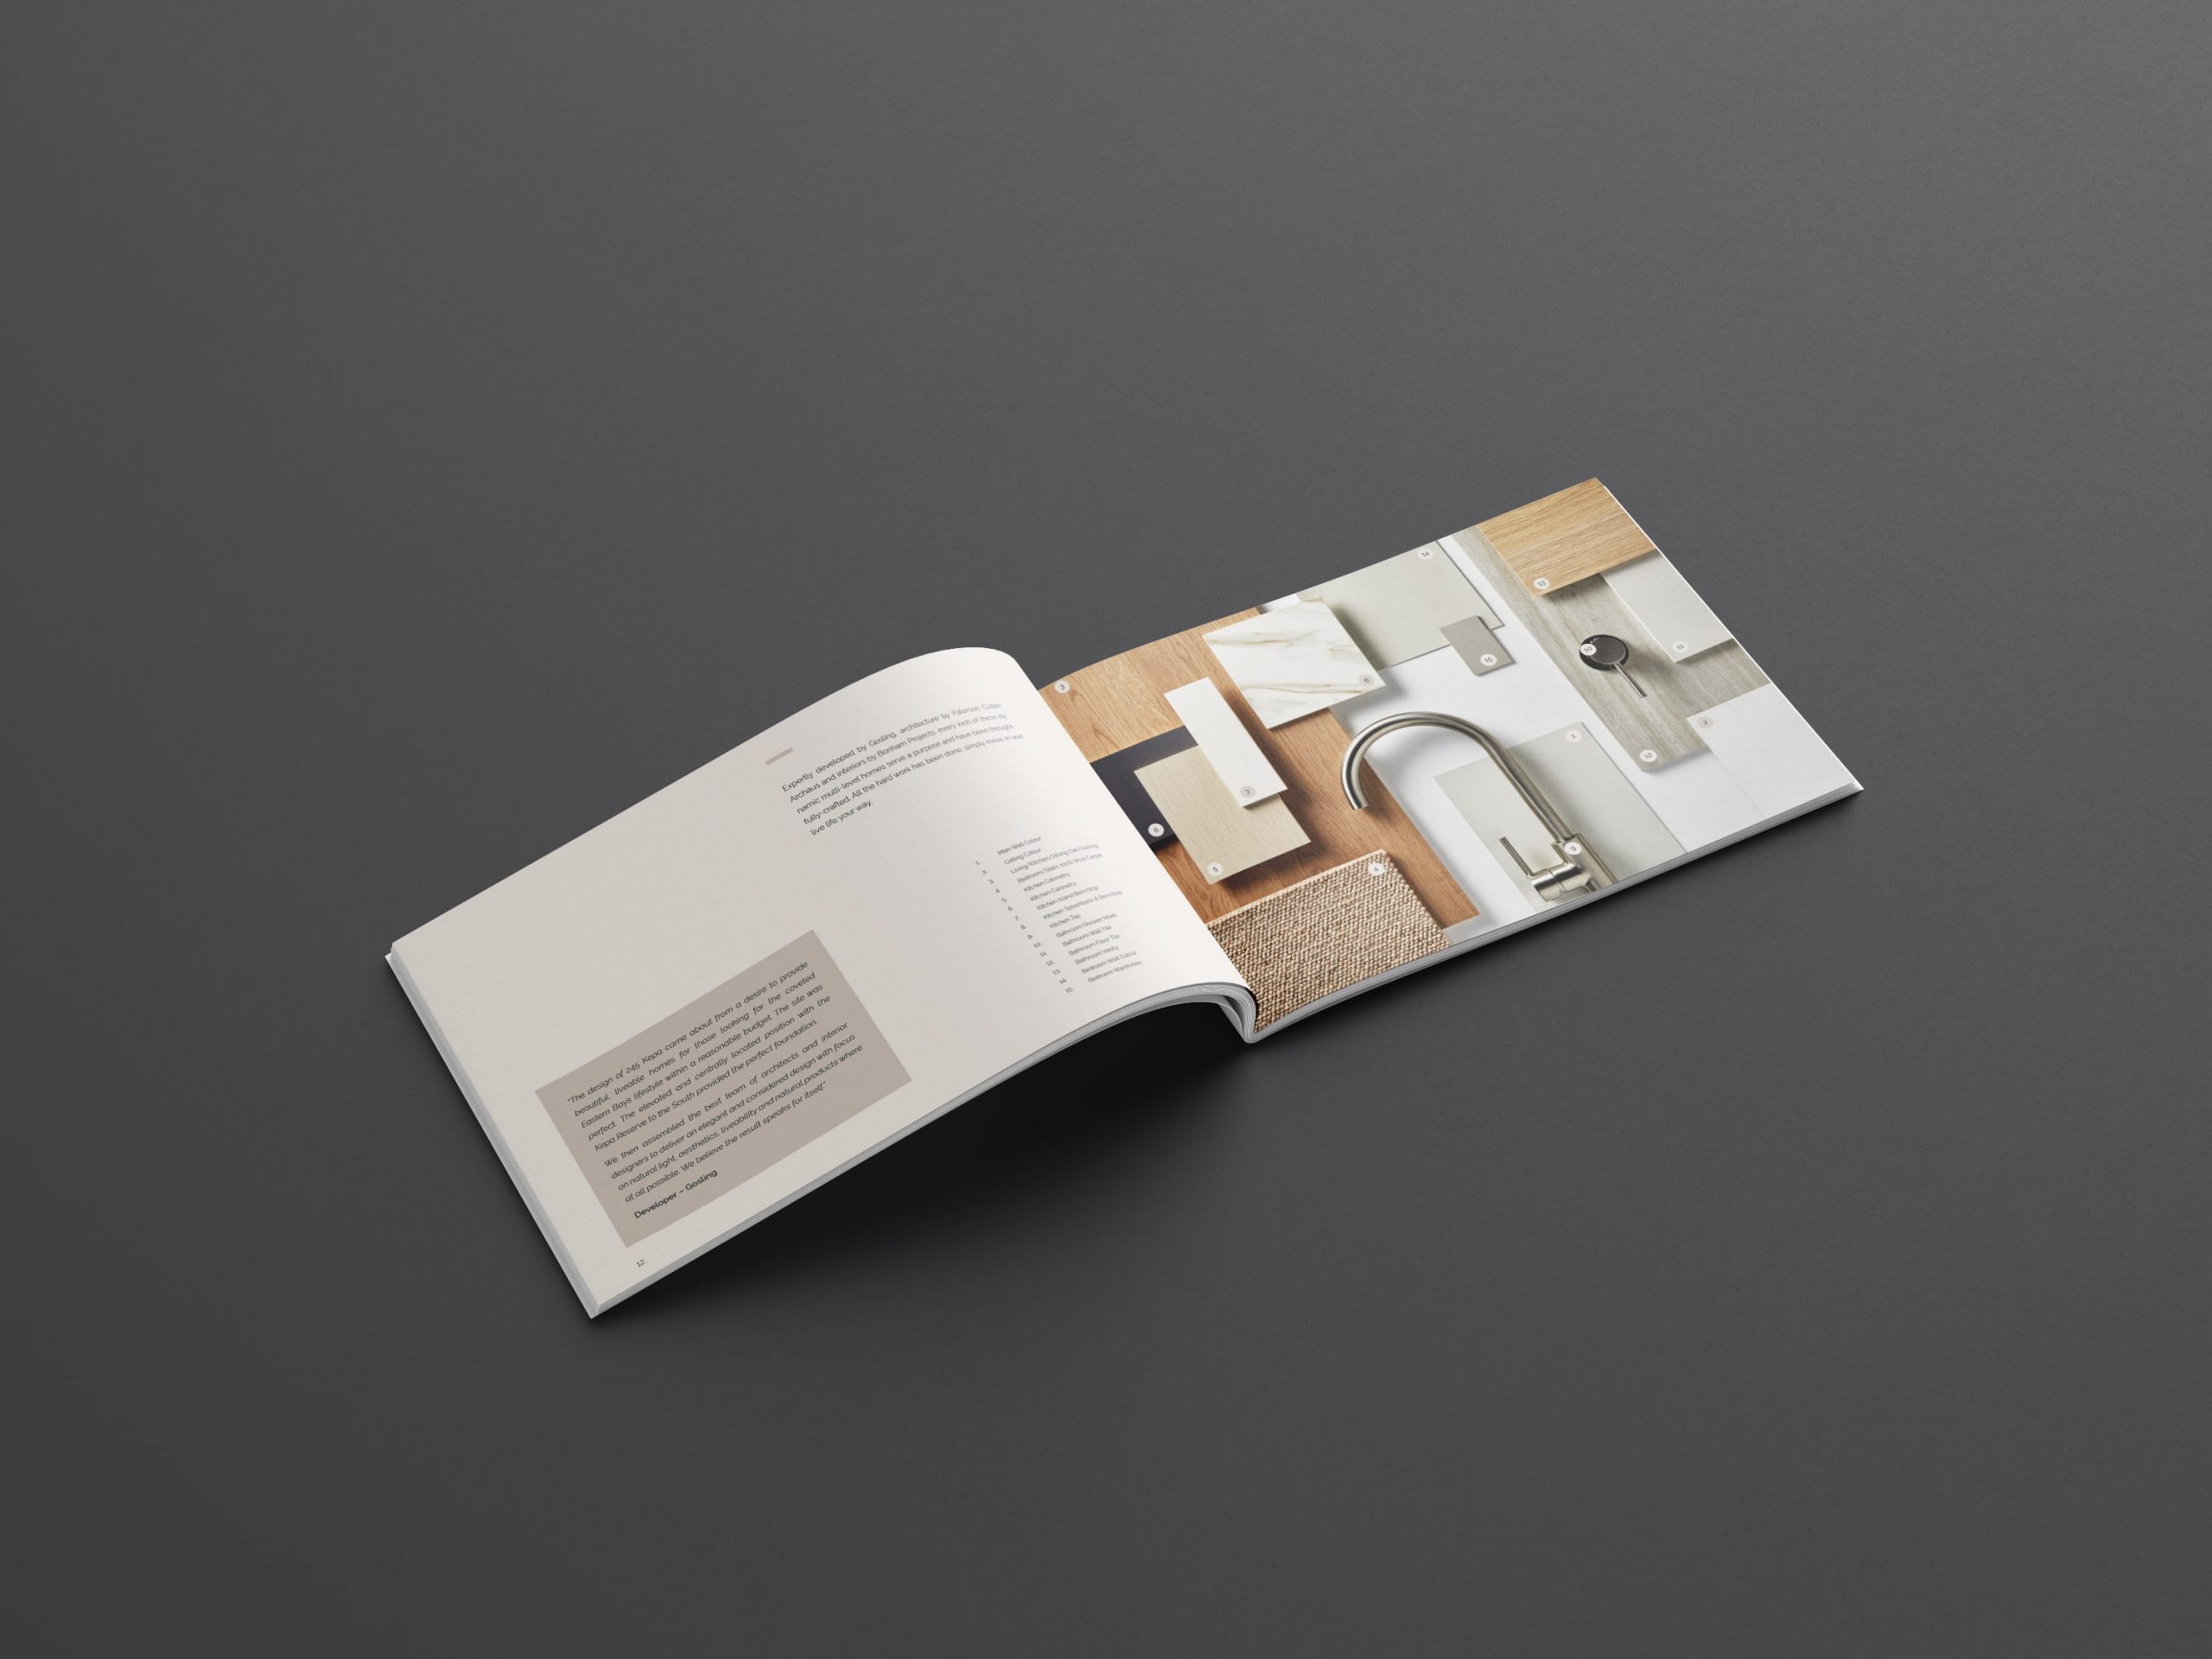 245-Kepa-Sales-Book-Design-1